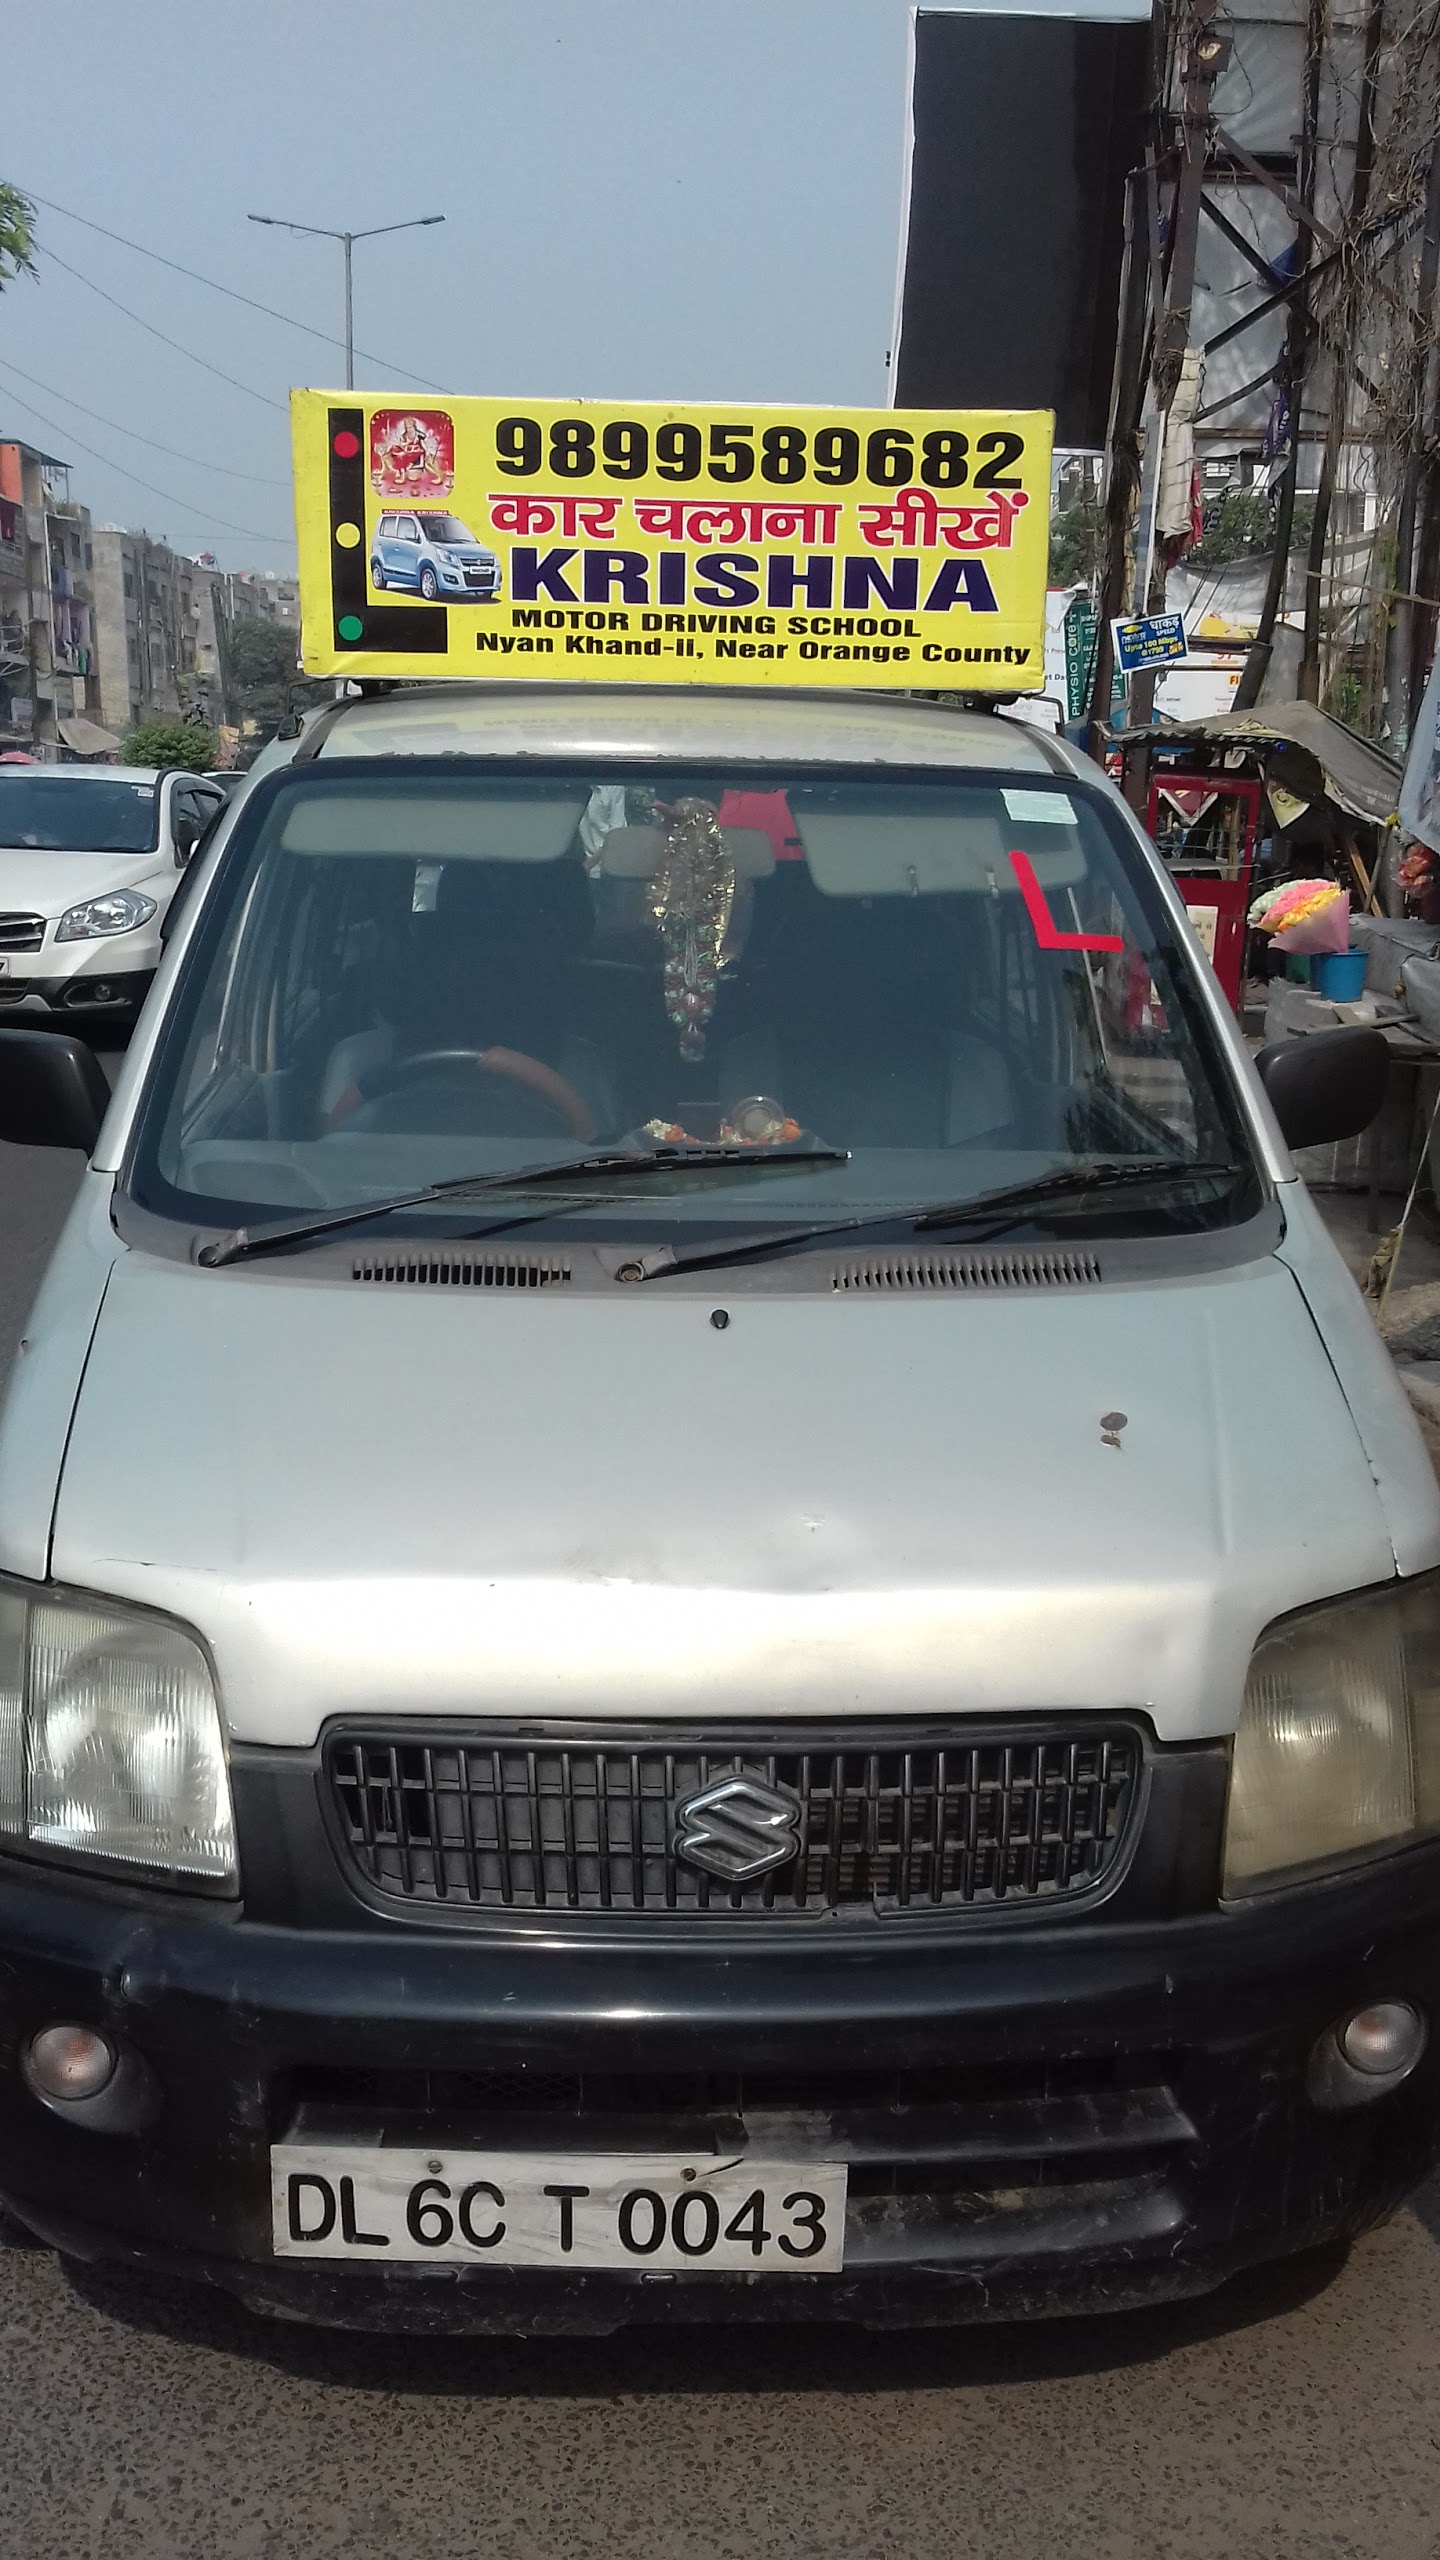 Krishna Motor Car Driving Traning School